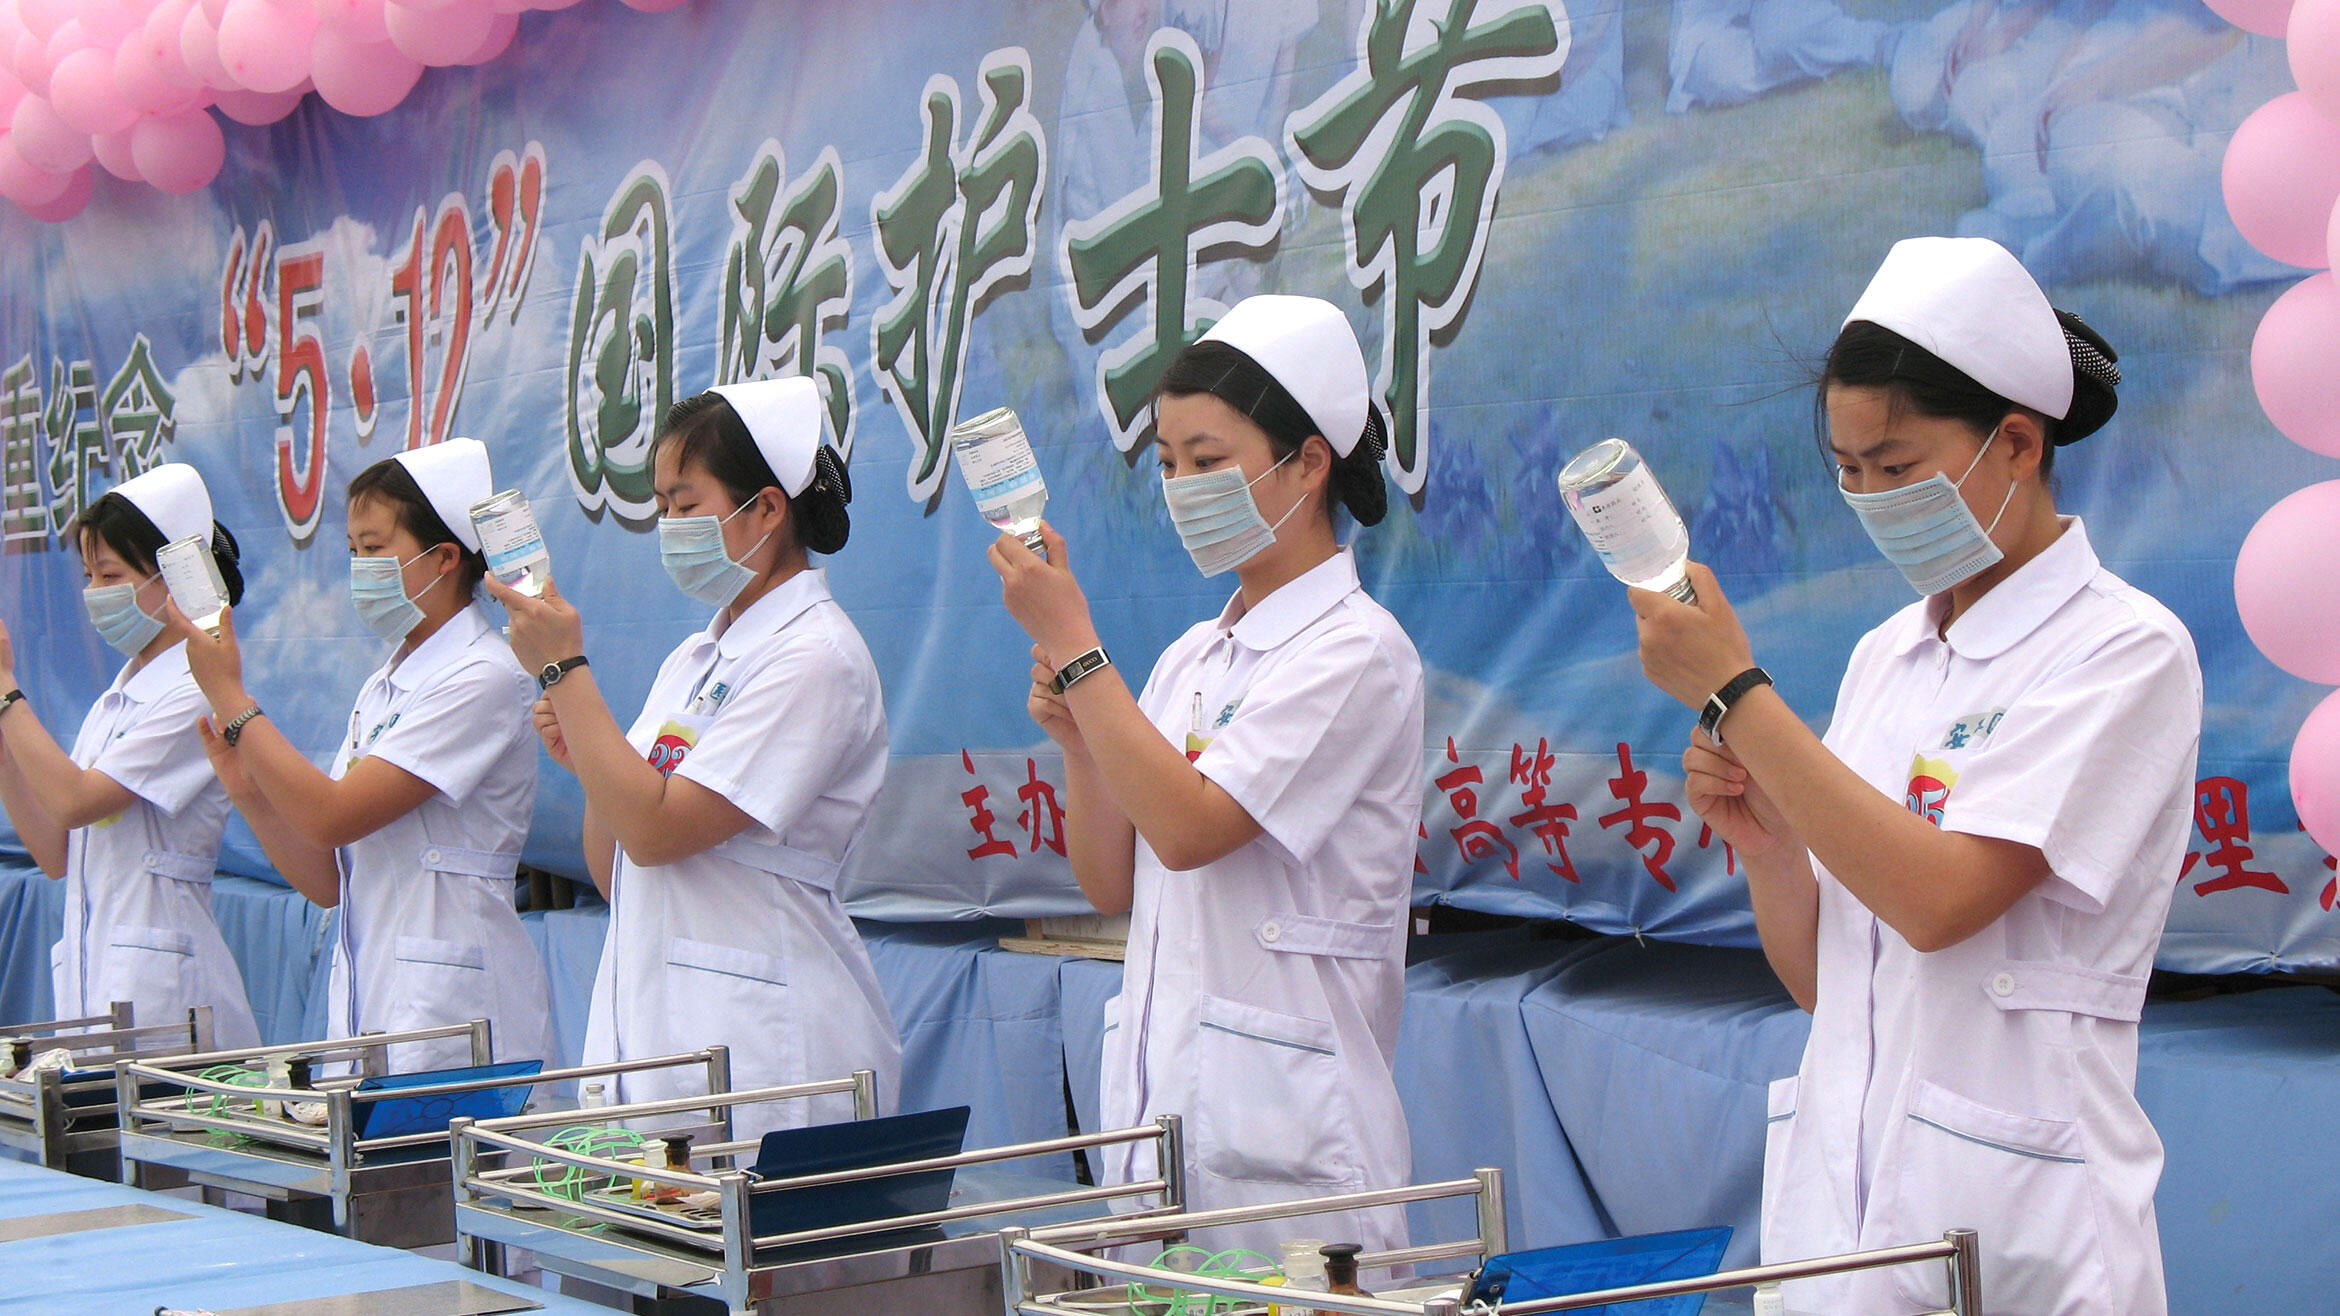 Chinesinnen in weißen Kitteln stehen in einer Reihe und ziehen Spritzen auf